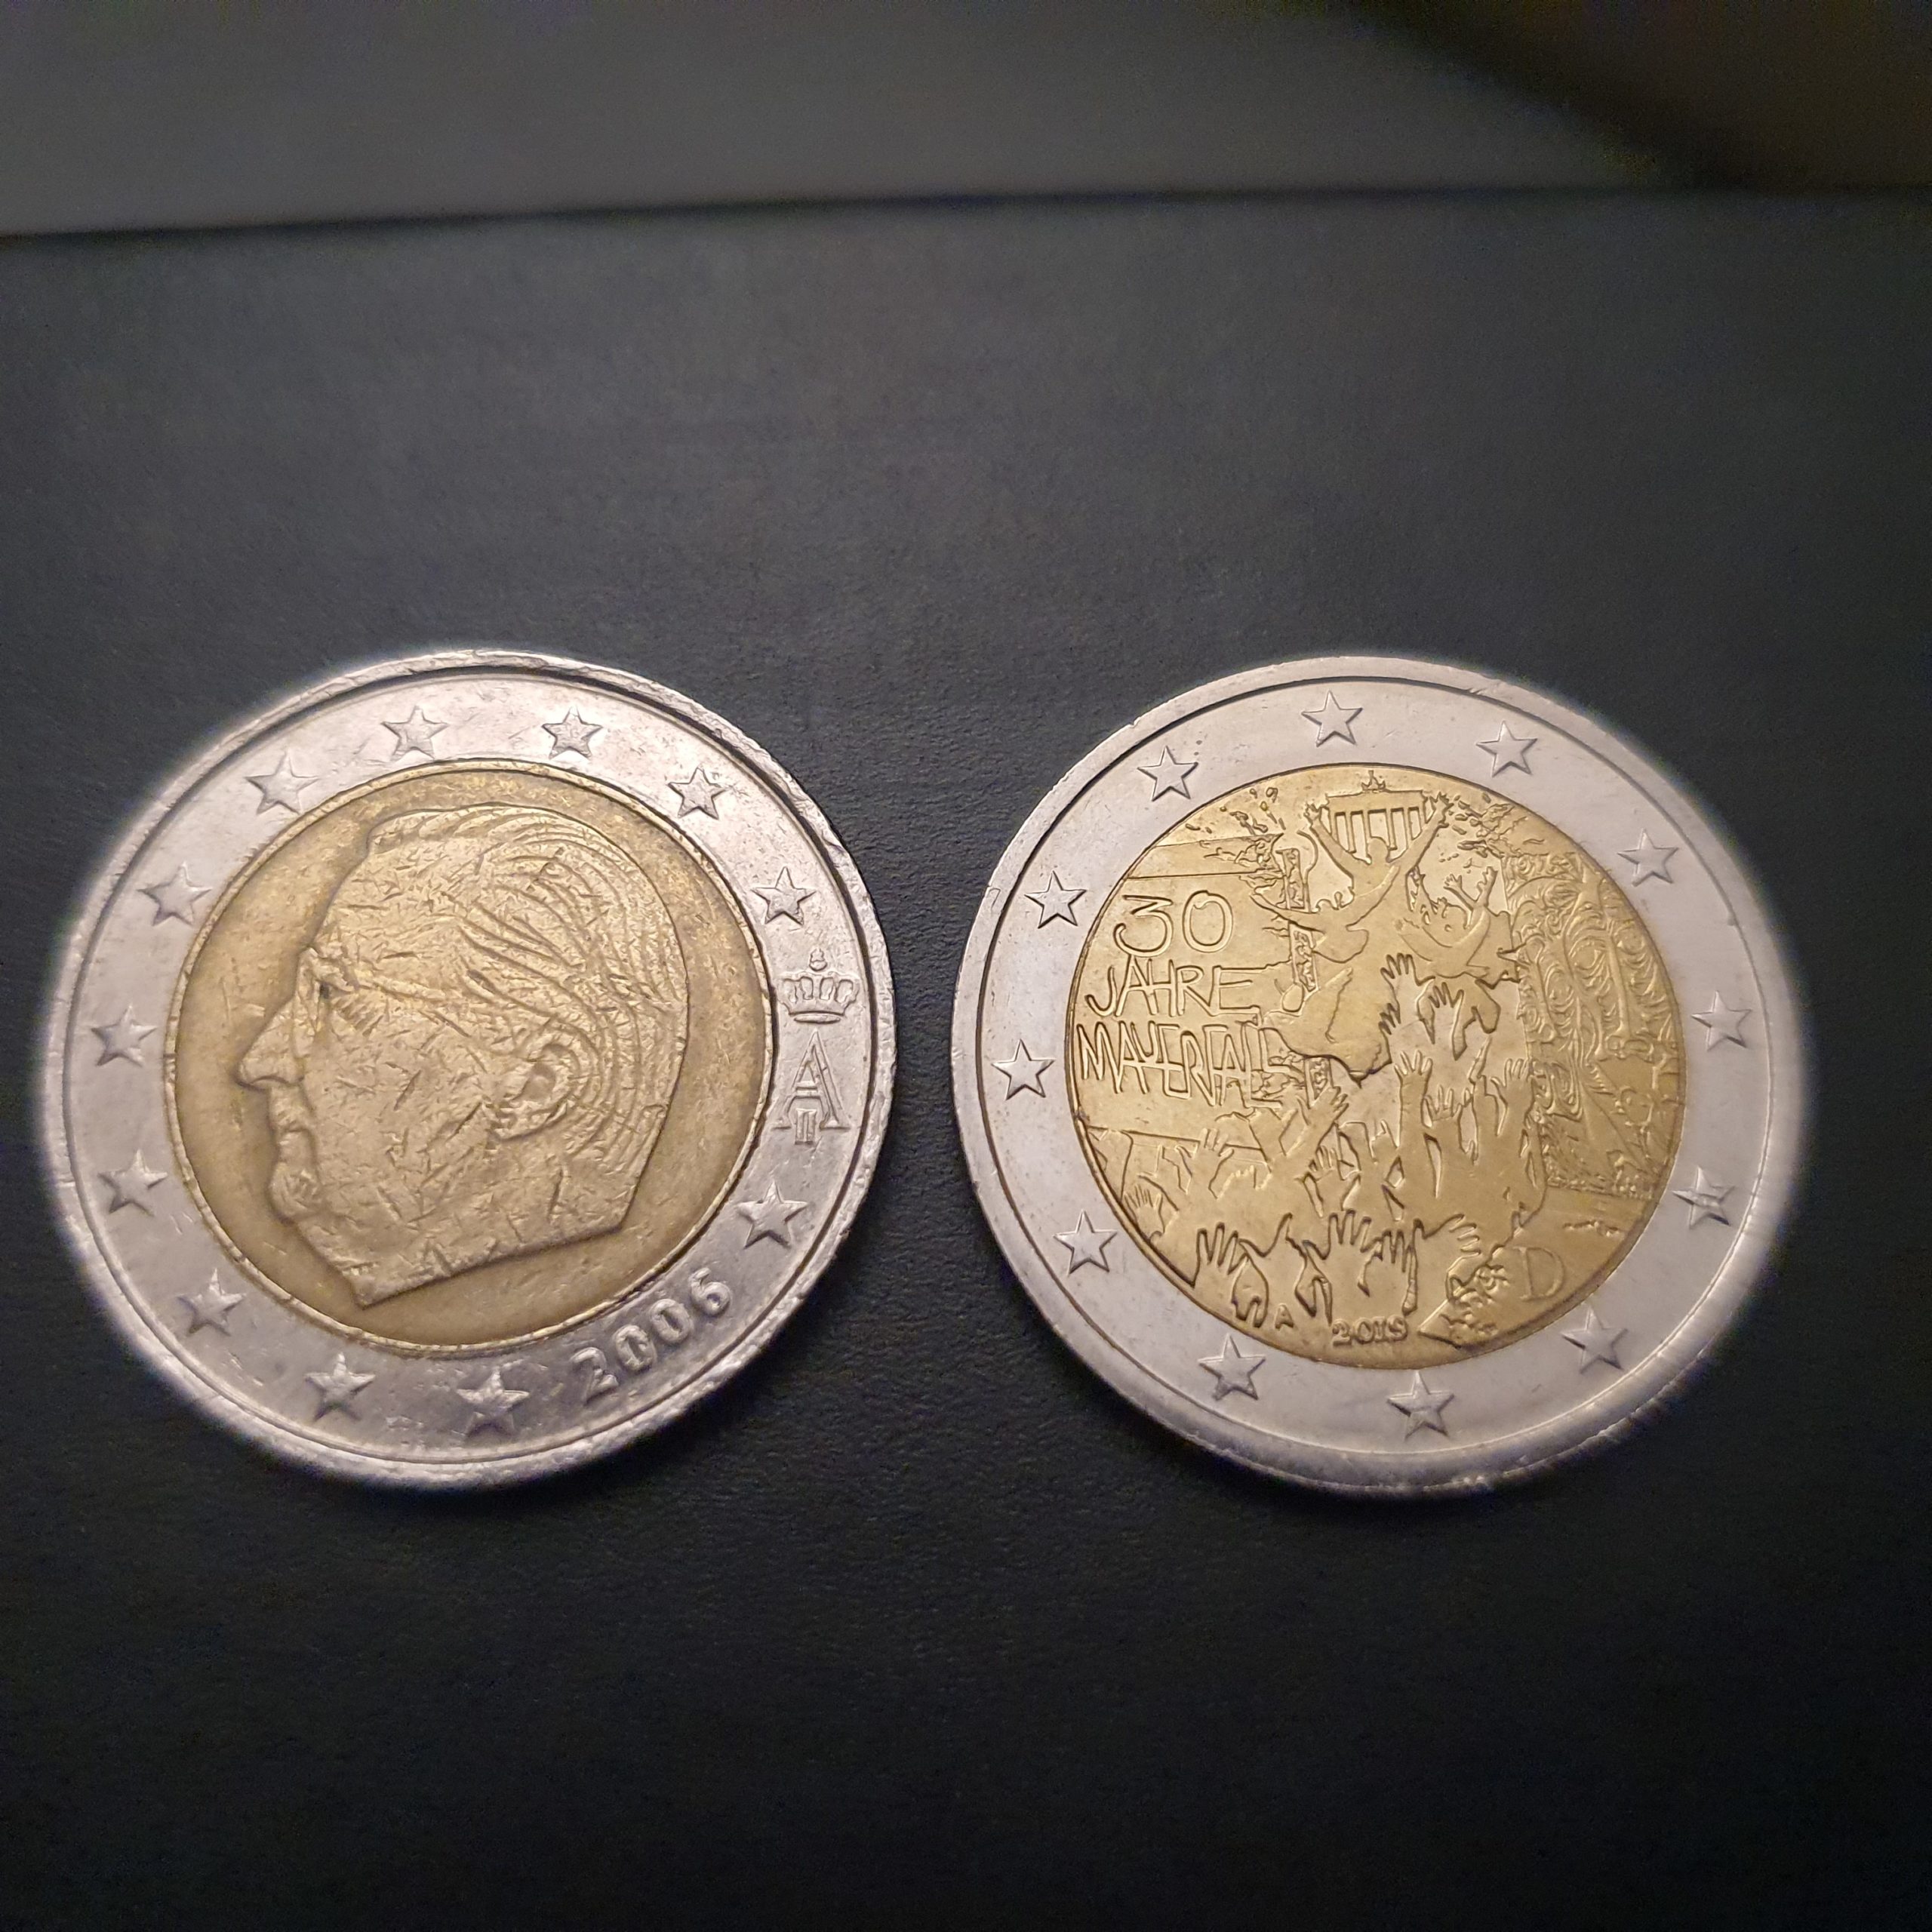 Error coinage 2 euros – Fehlprägung 2 Euro